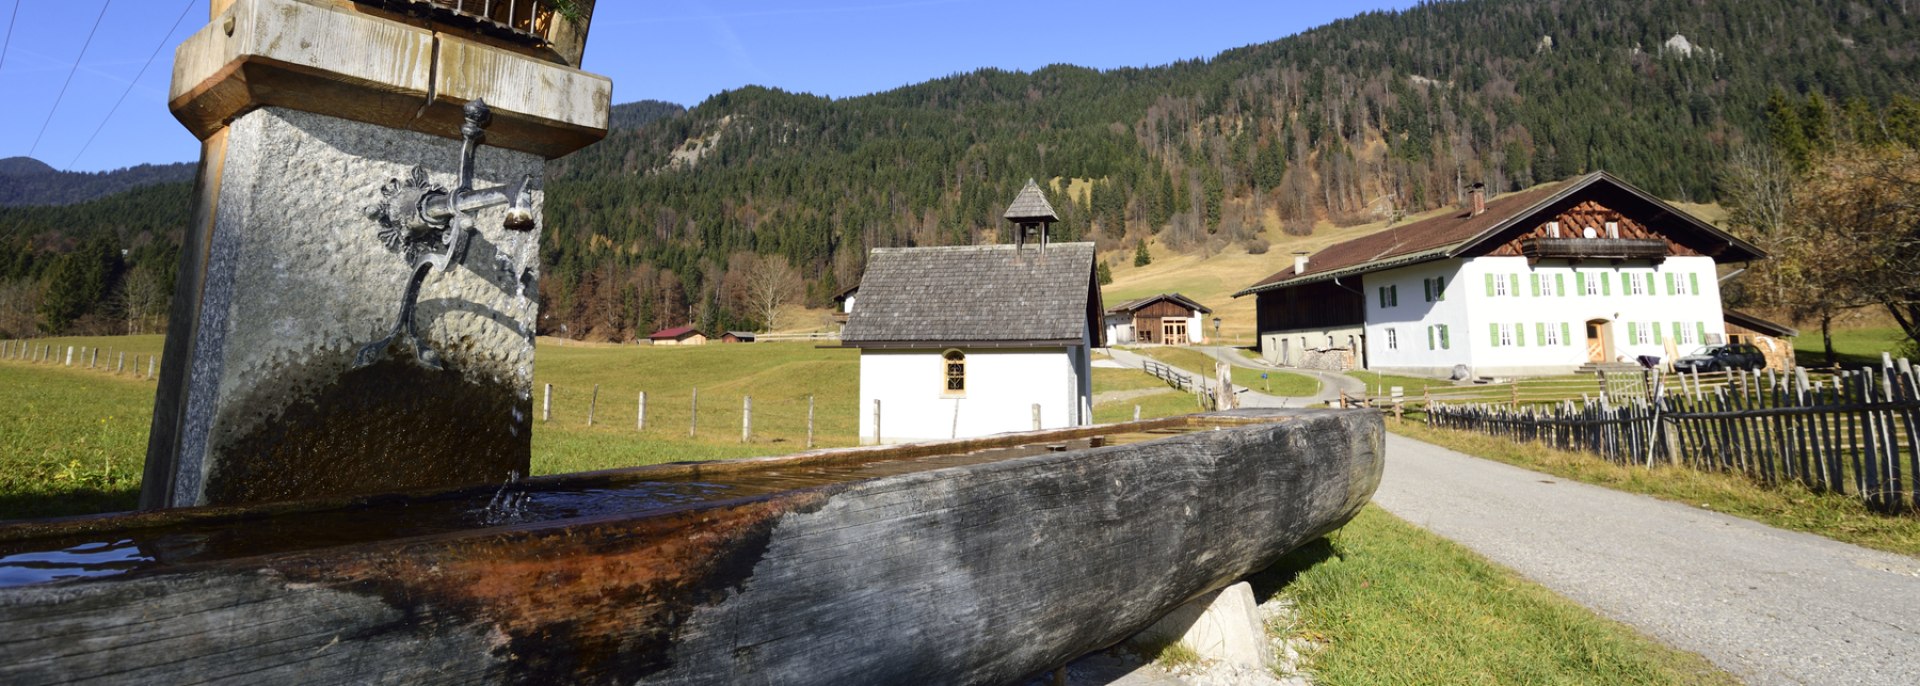 Kapelle und Bauernhof im Krüner Ortsteil Gerold, © Alpenwelt Karwendel | Stefan Eisend